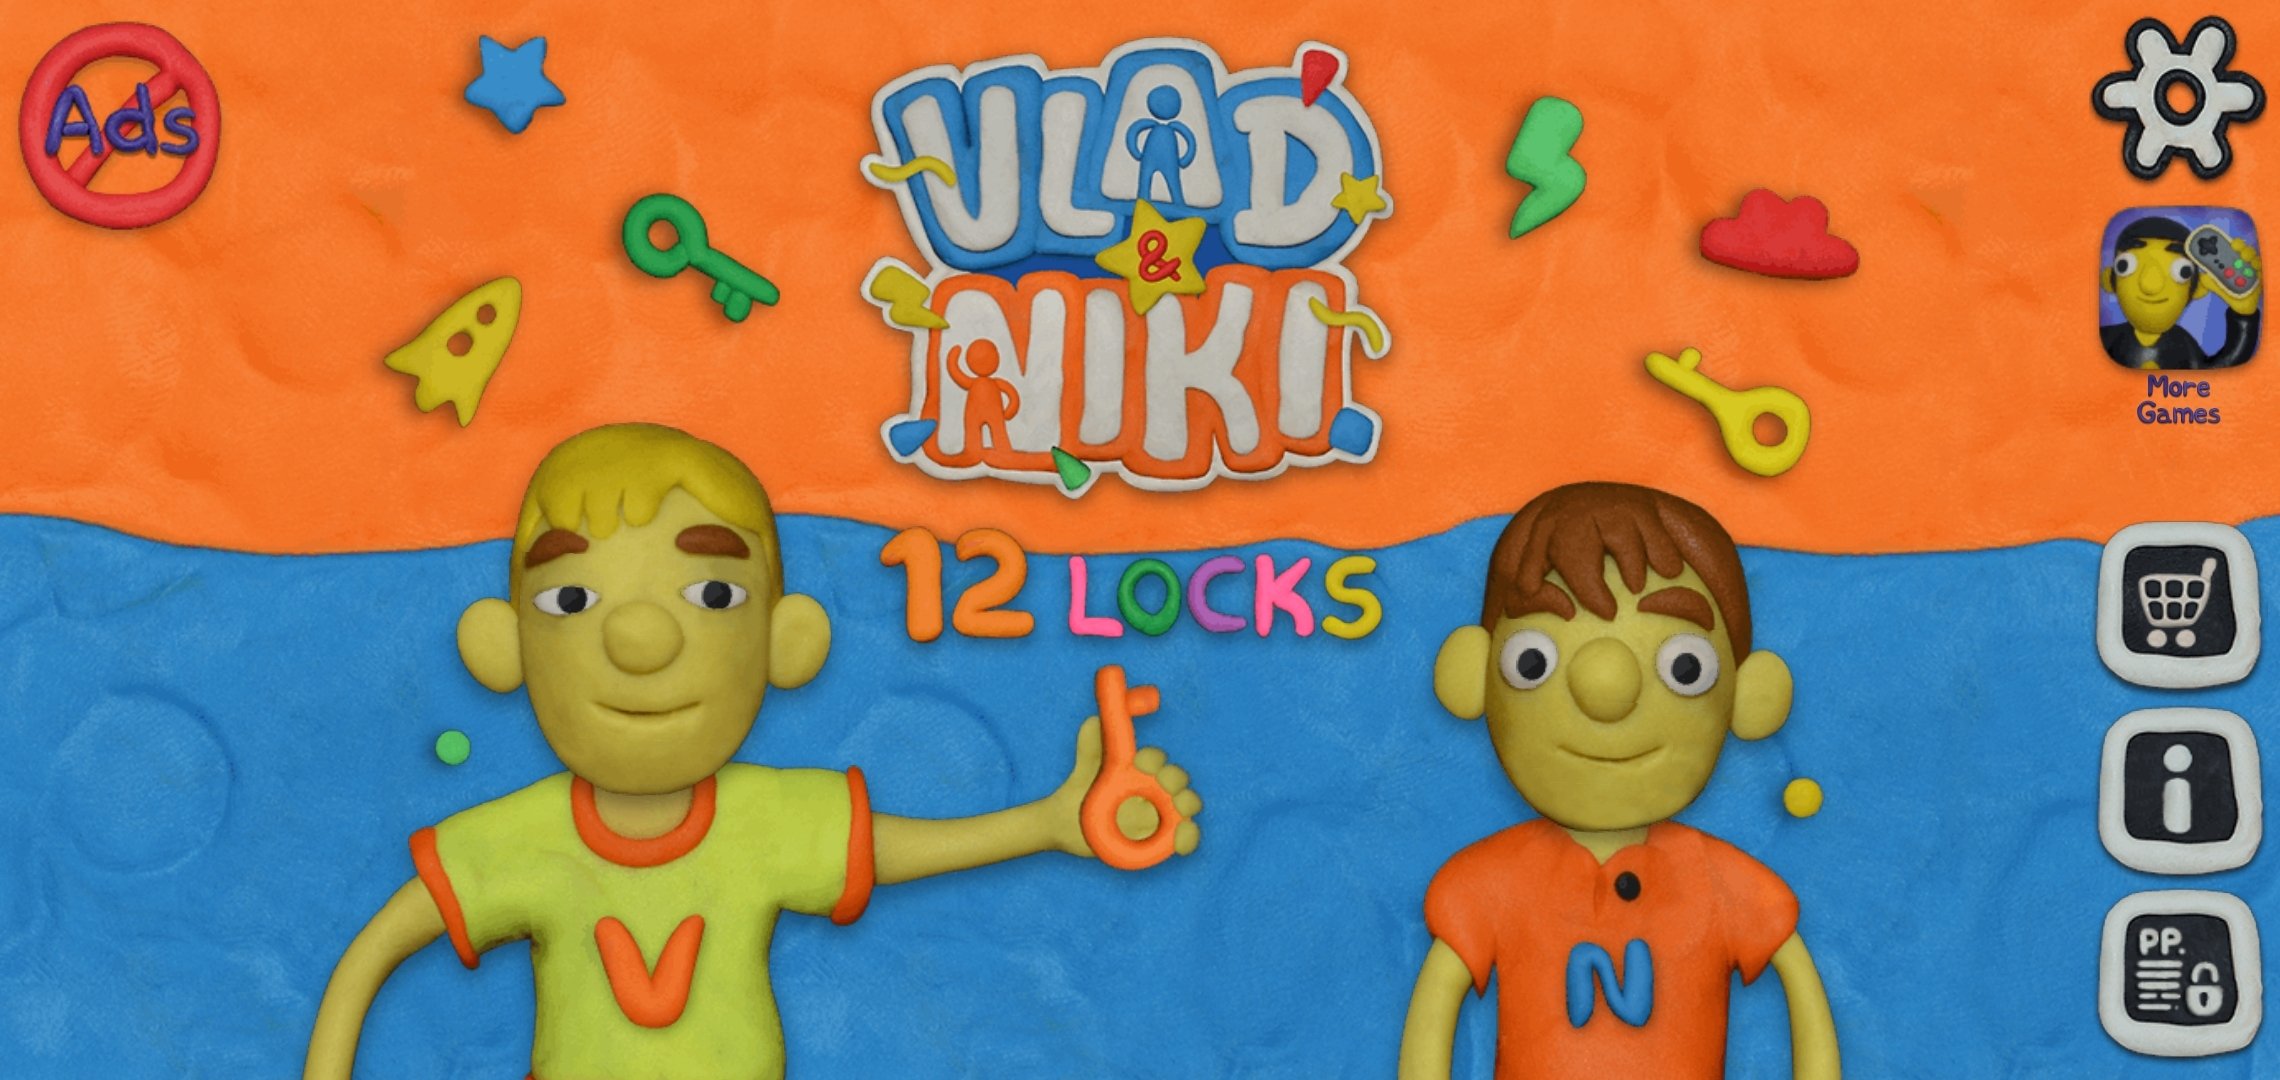 Nick 12. Vlad and Niki 12 Locks.